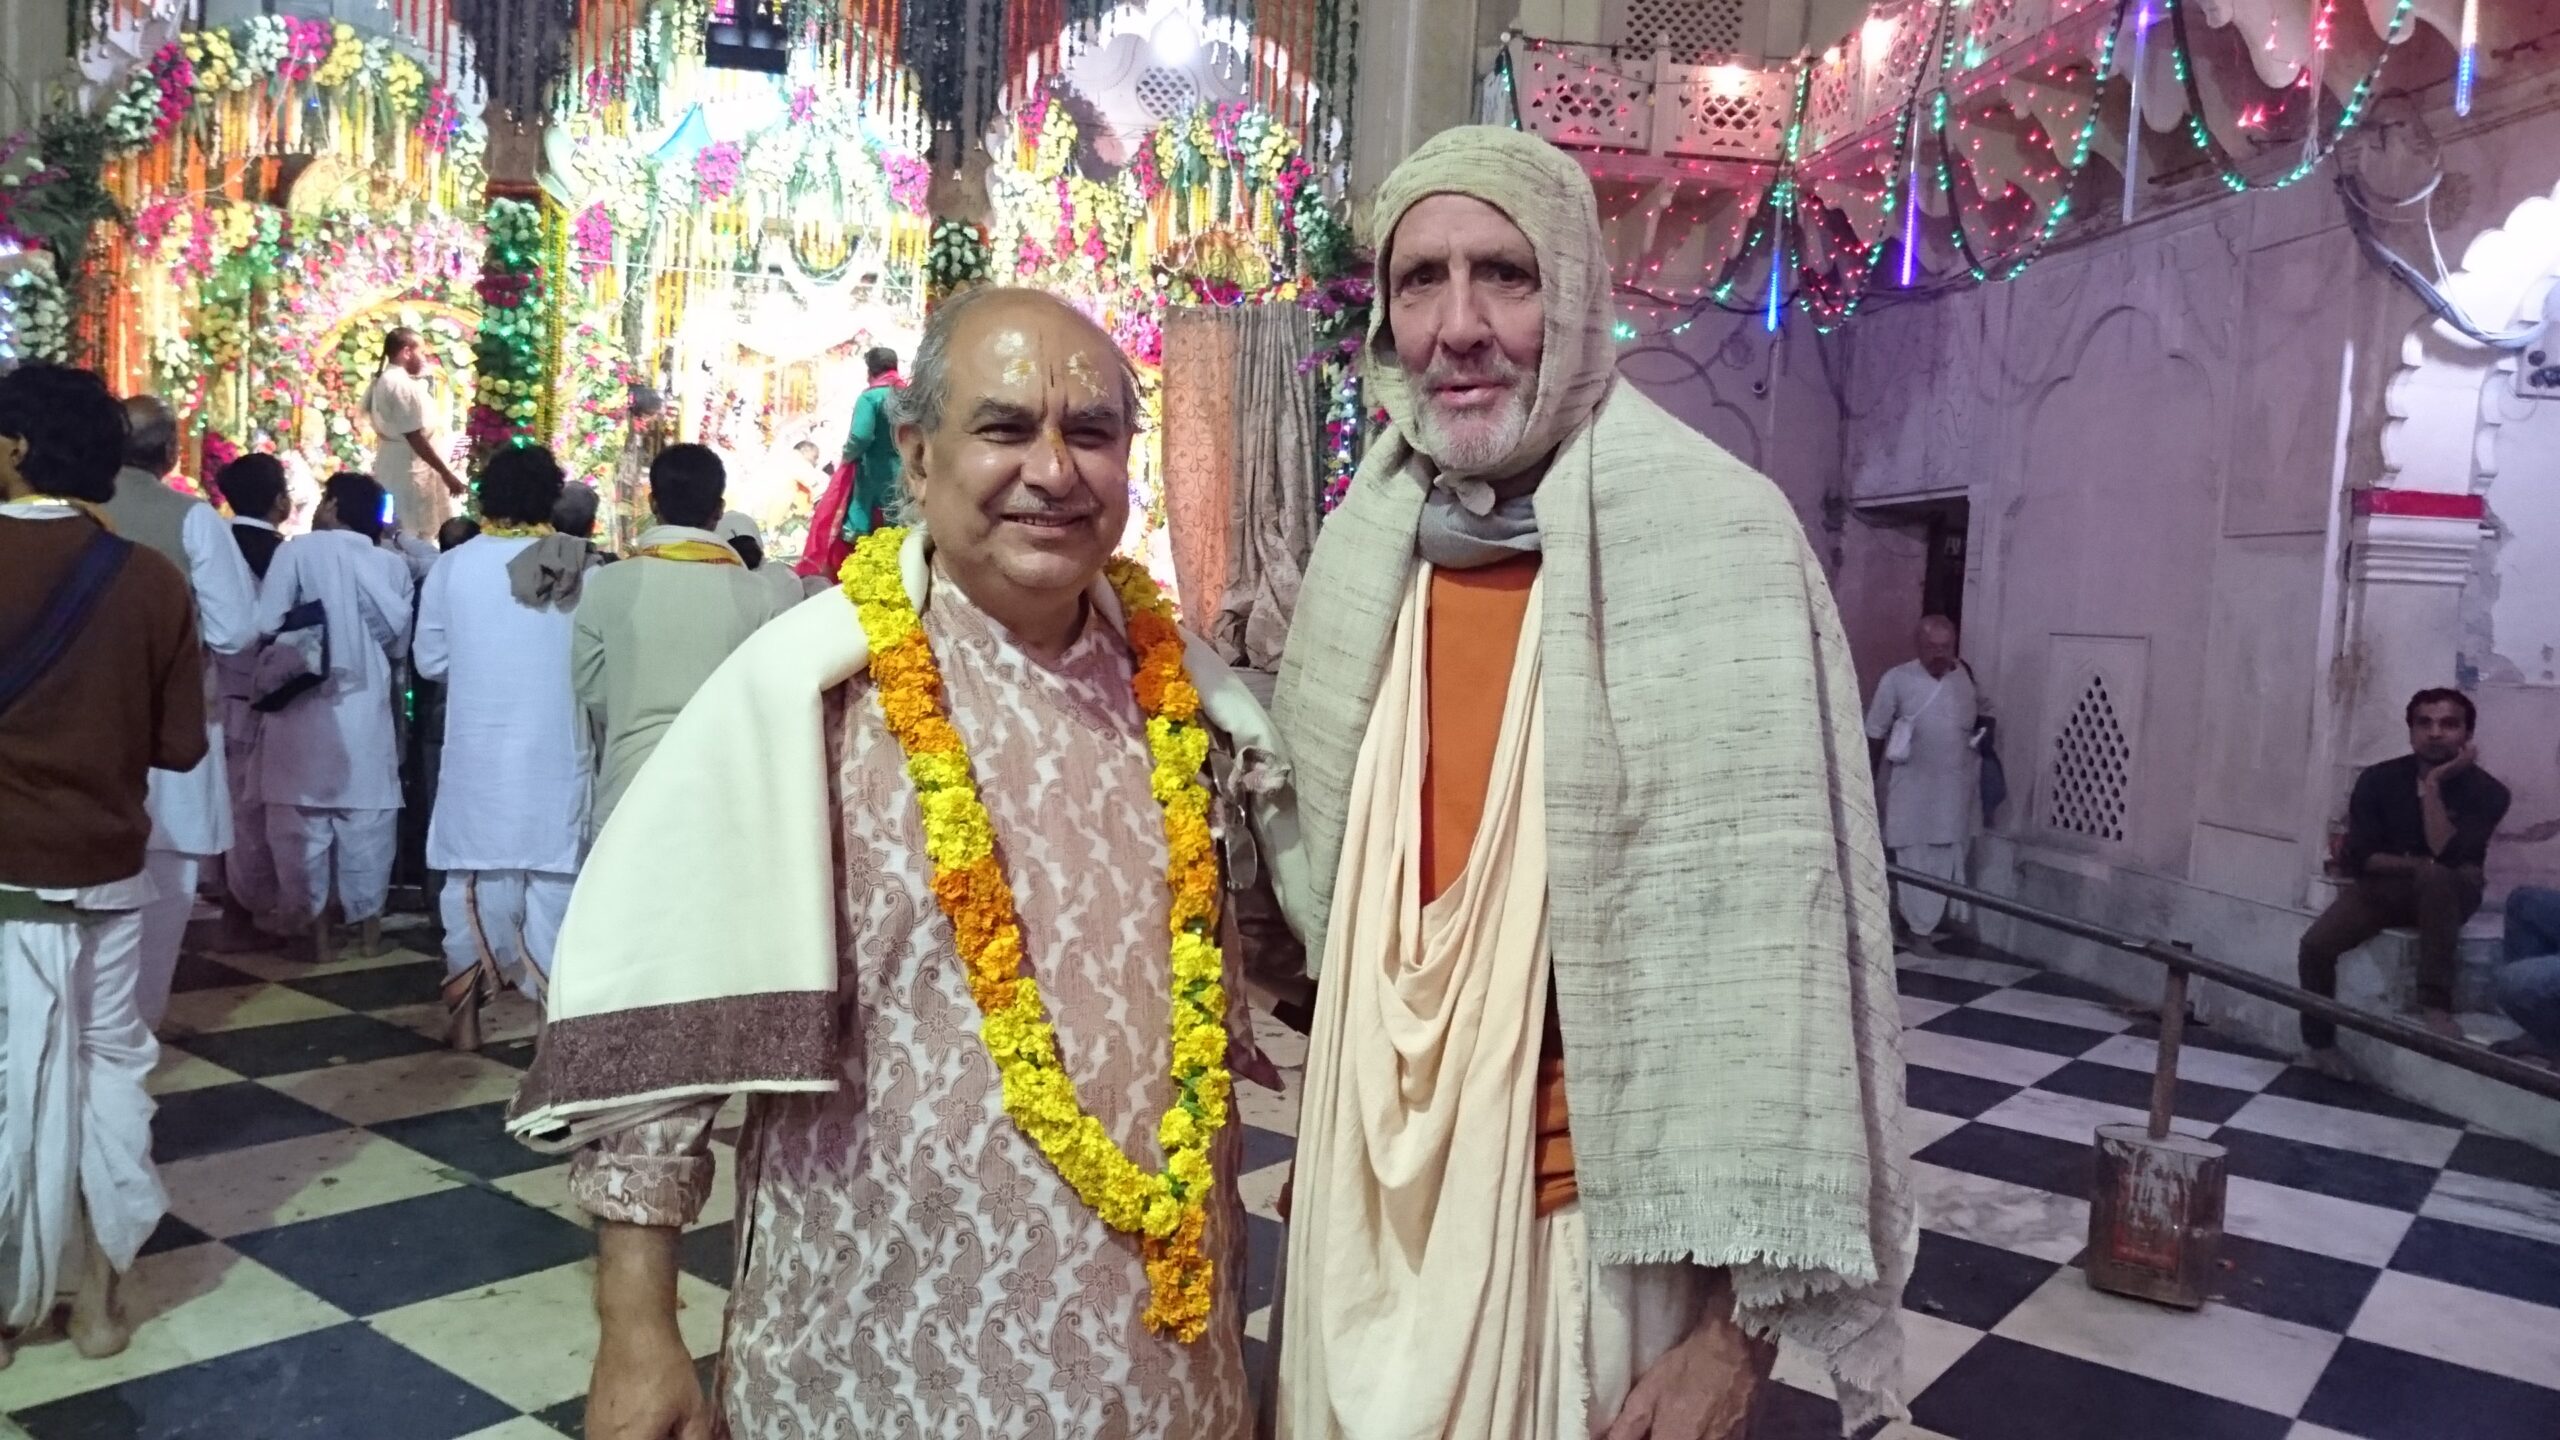 12 Swami narasingha and padmanabha goswami 2015 scaled